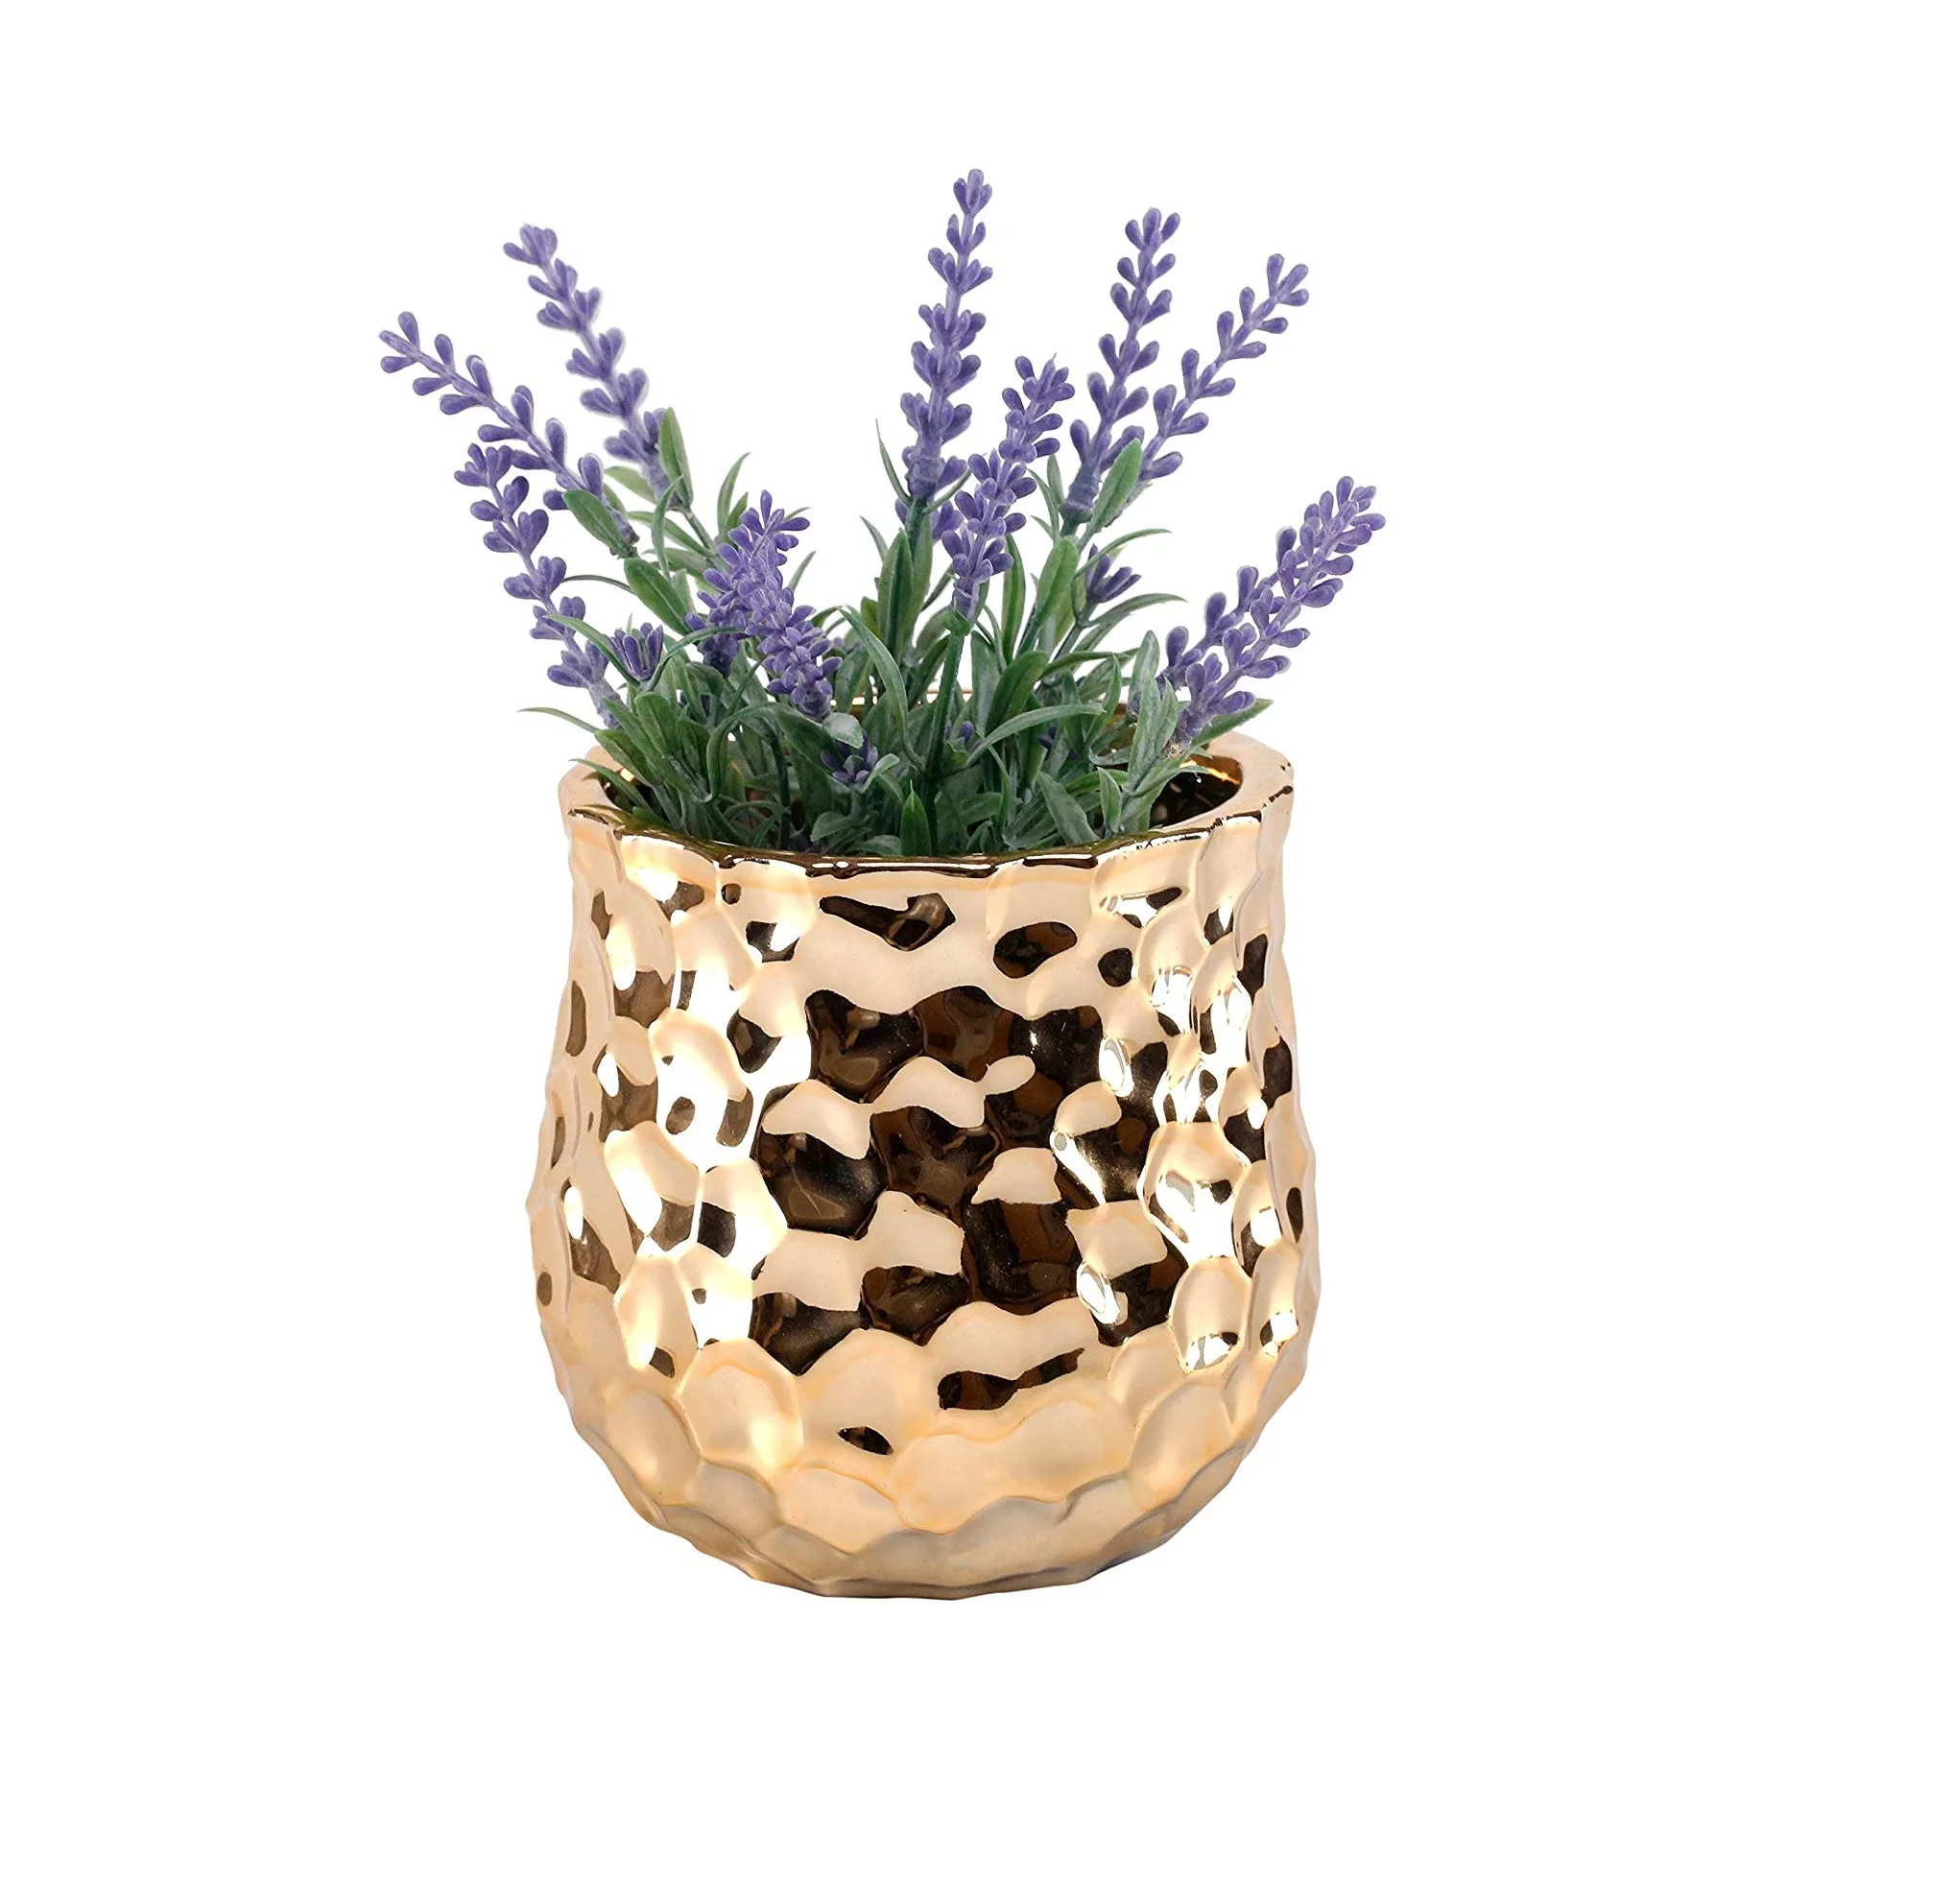 

Best Selling Round Ceramic Floral Vase Metallic Gold Embossed Hammered Texture Mini Ceramic Planter Pot Centerpieces Decor